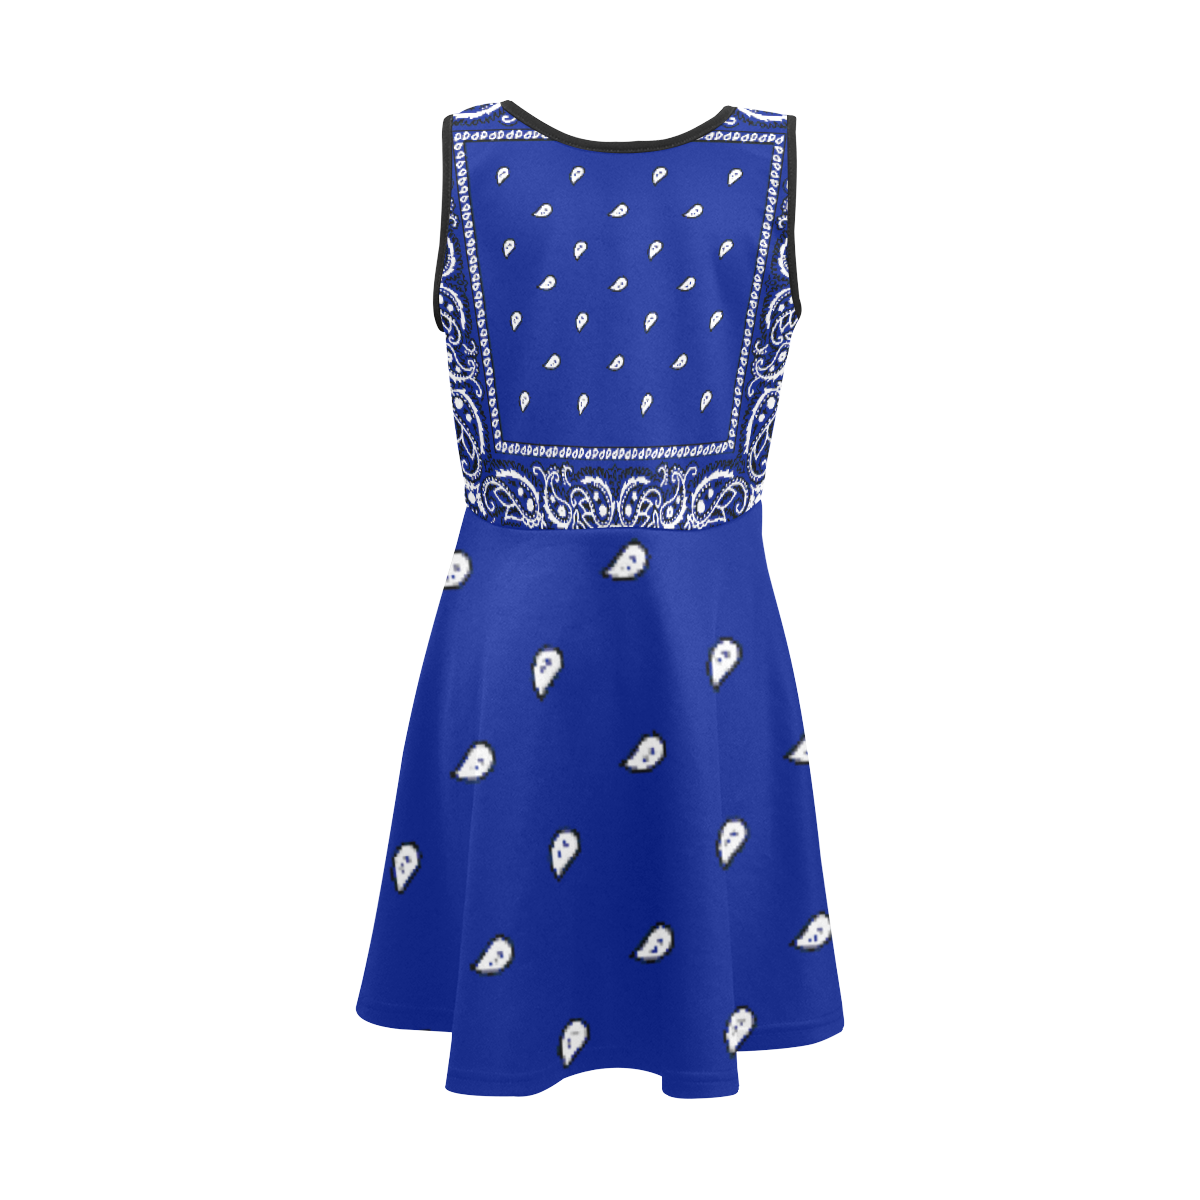 KERCHIEF PATTERN BLUE Girls' Sleeveless Sundress (Model D56)